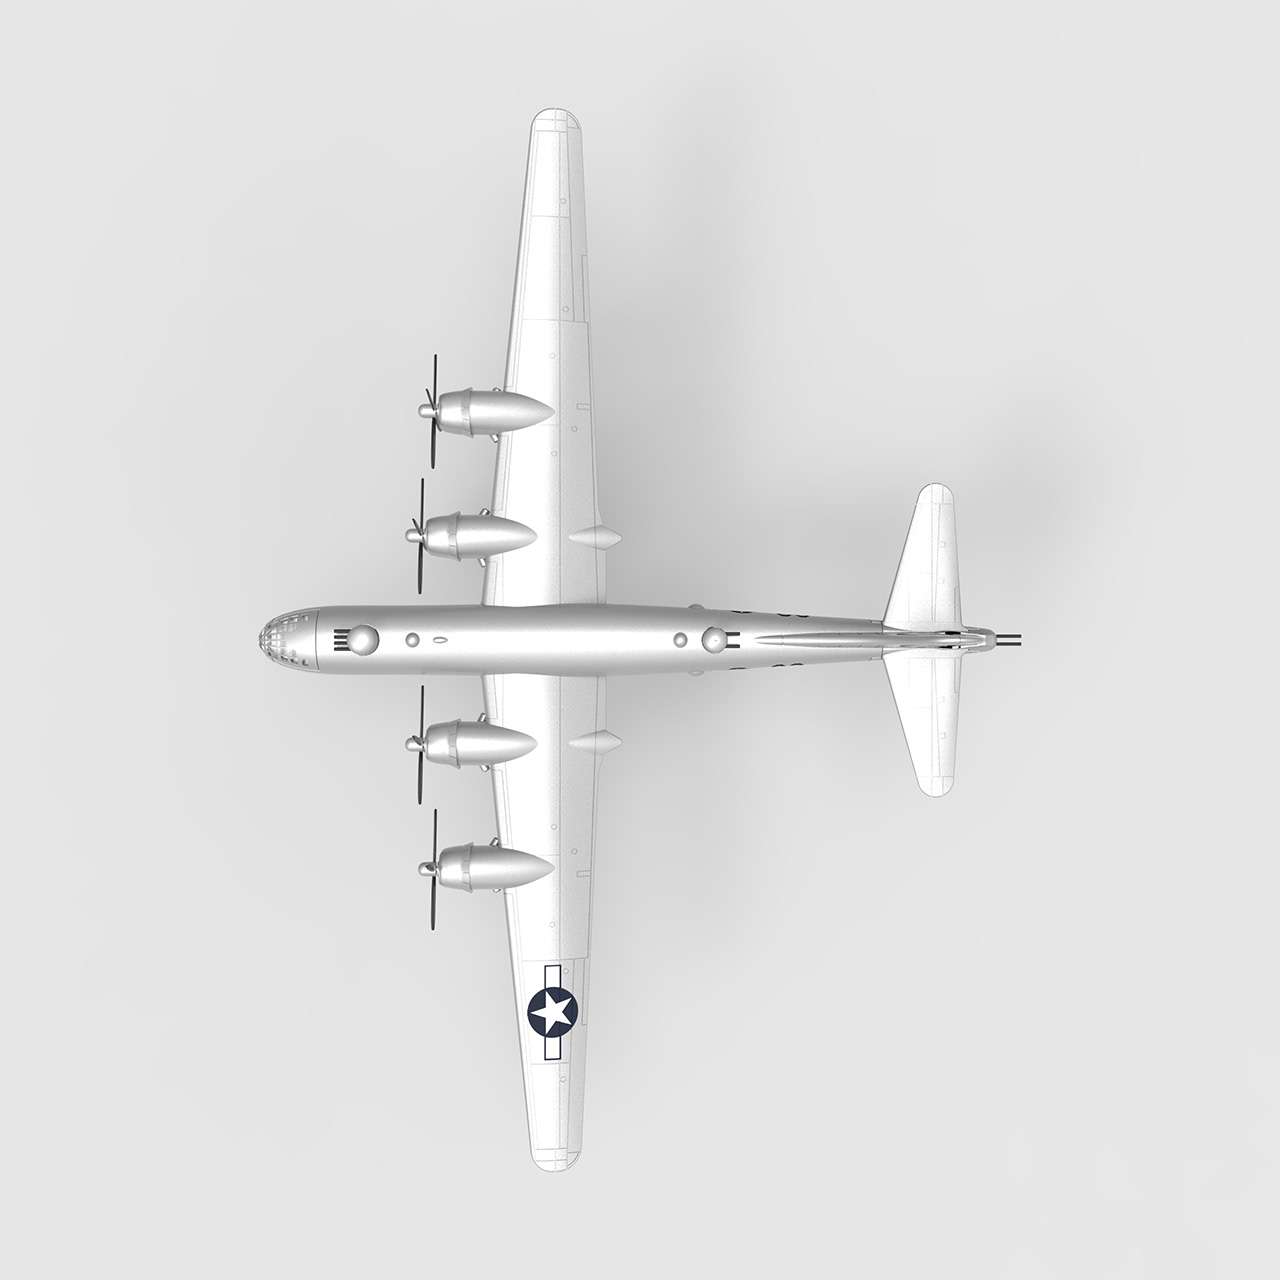 Boeing B29 - Enola Gay | Visto de Cima